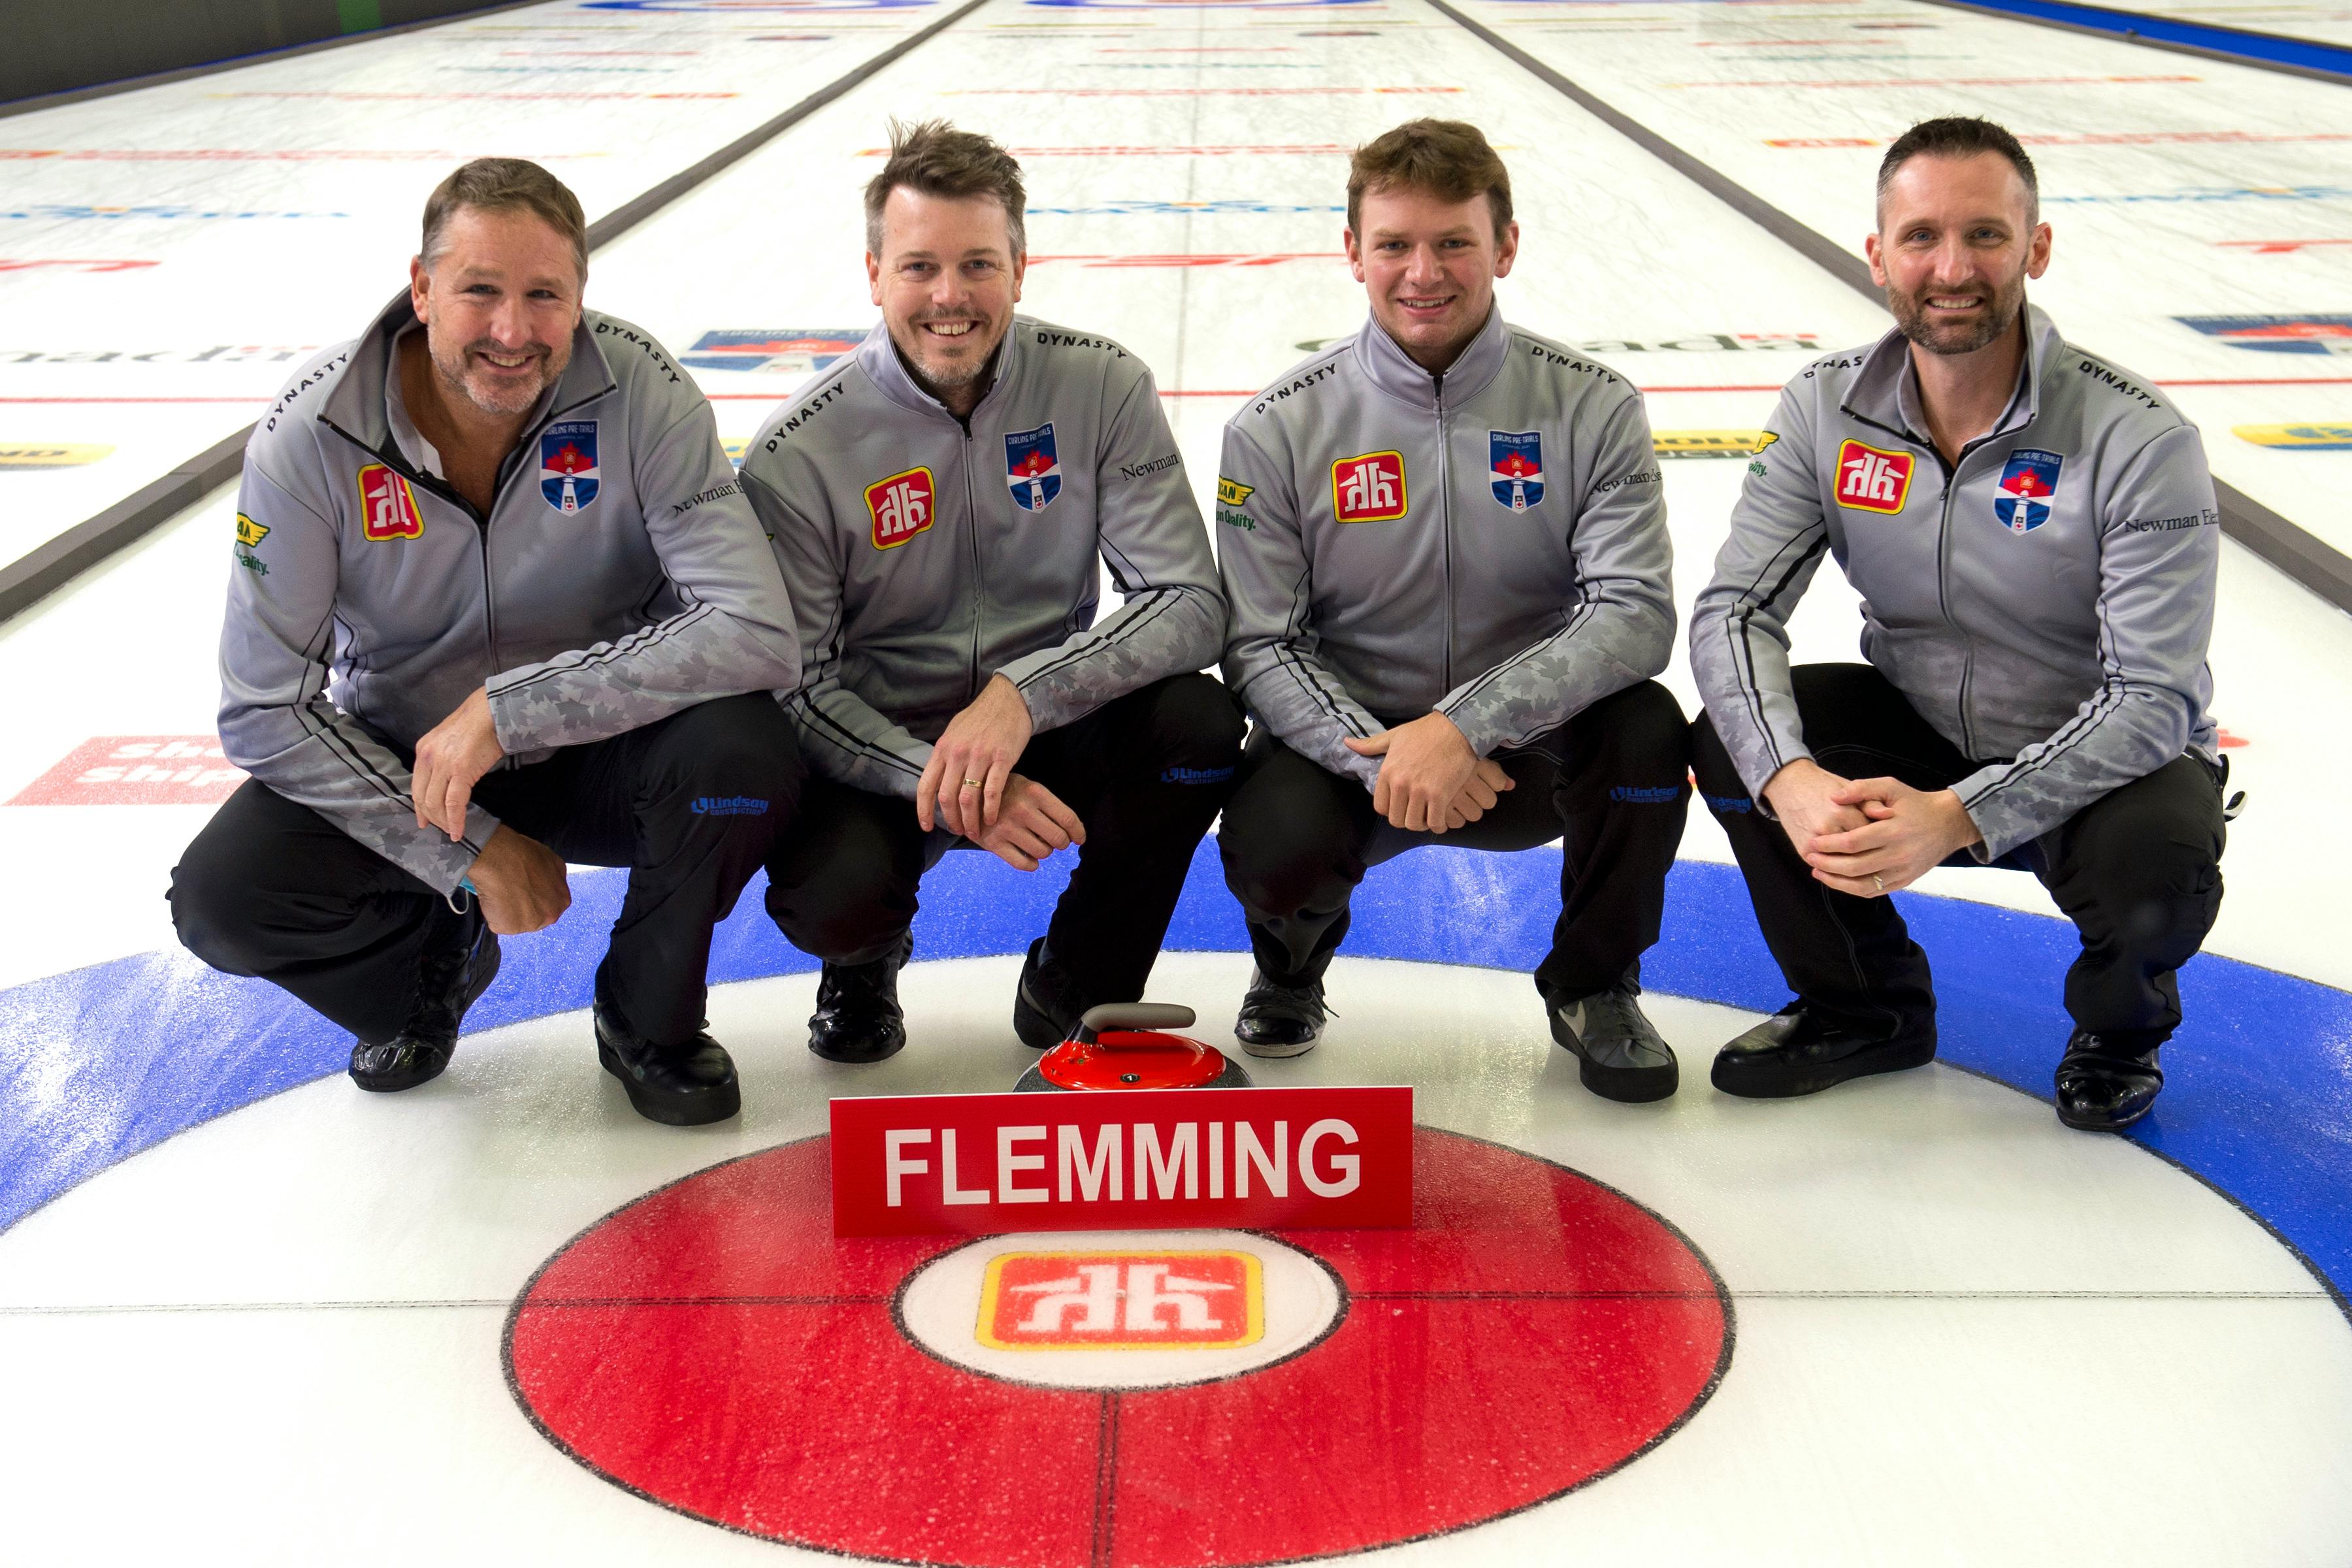 Tankard filled with Nova Scotia's top men's curling teams